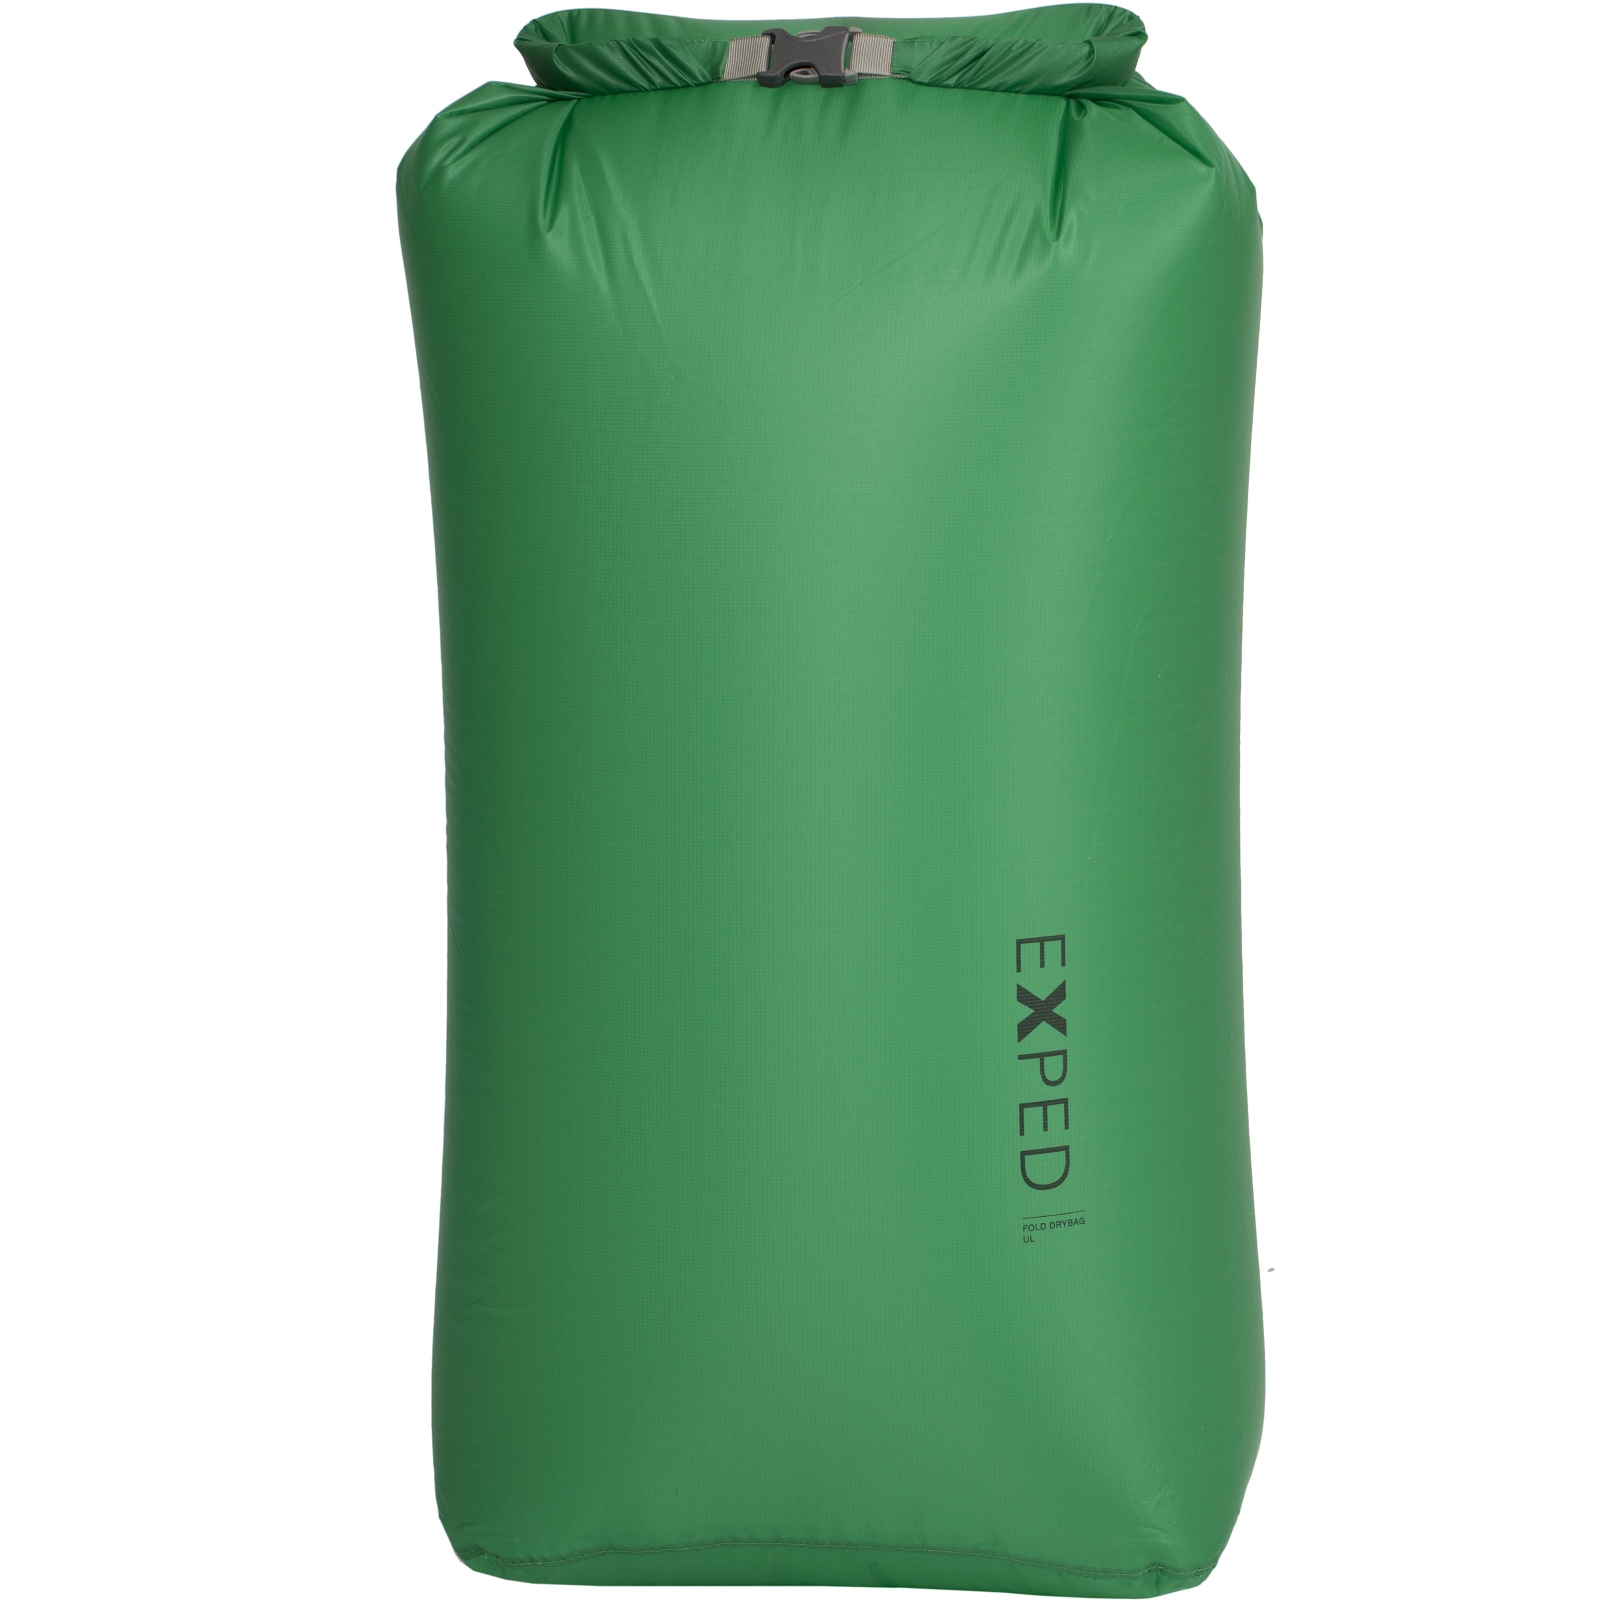 Produktbild von Exped Fold Drybag UL Packsack - XL - emerald